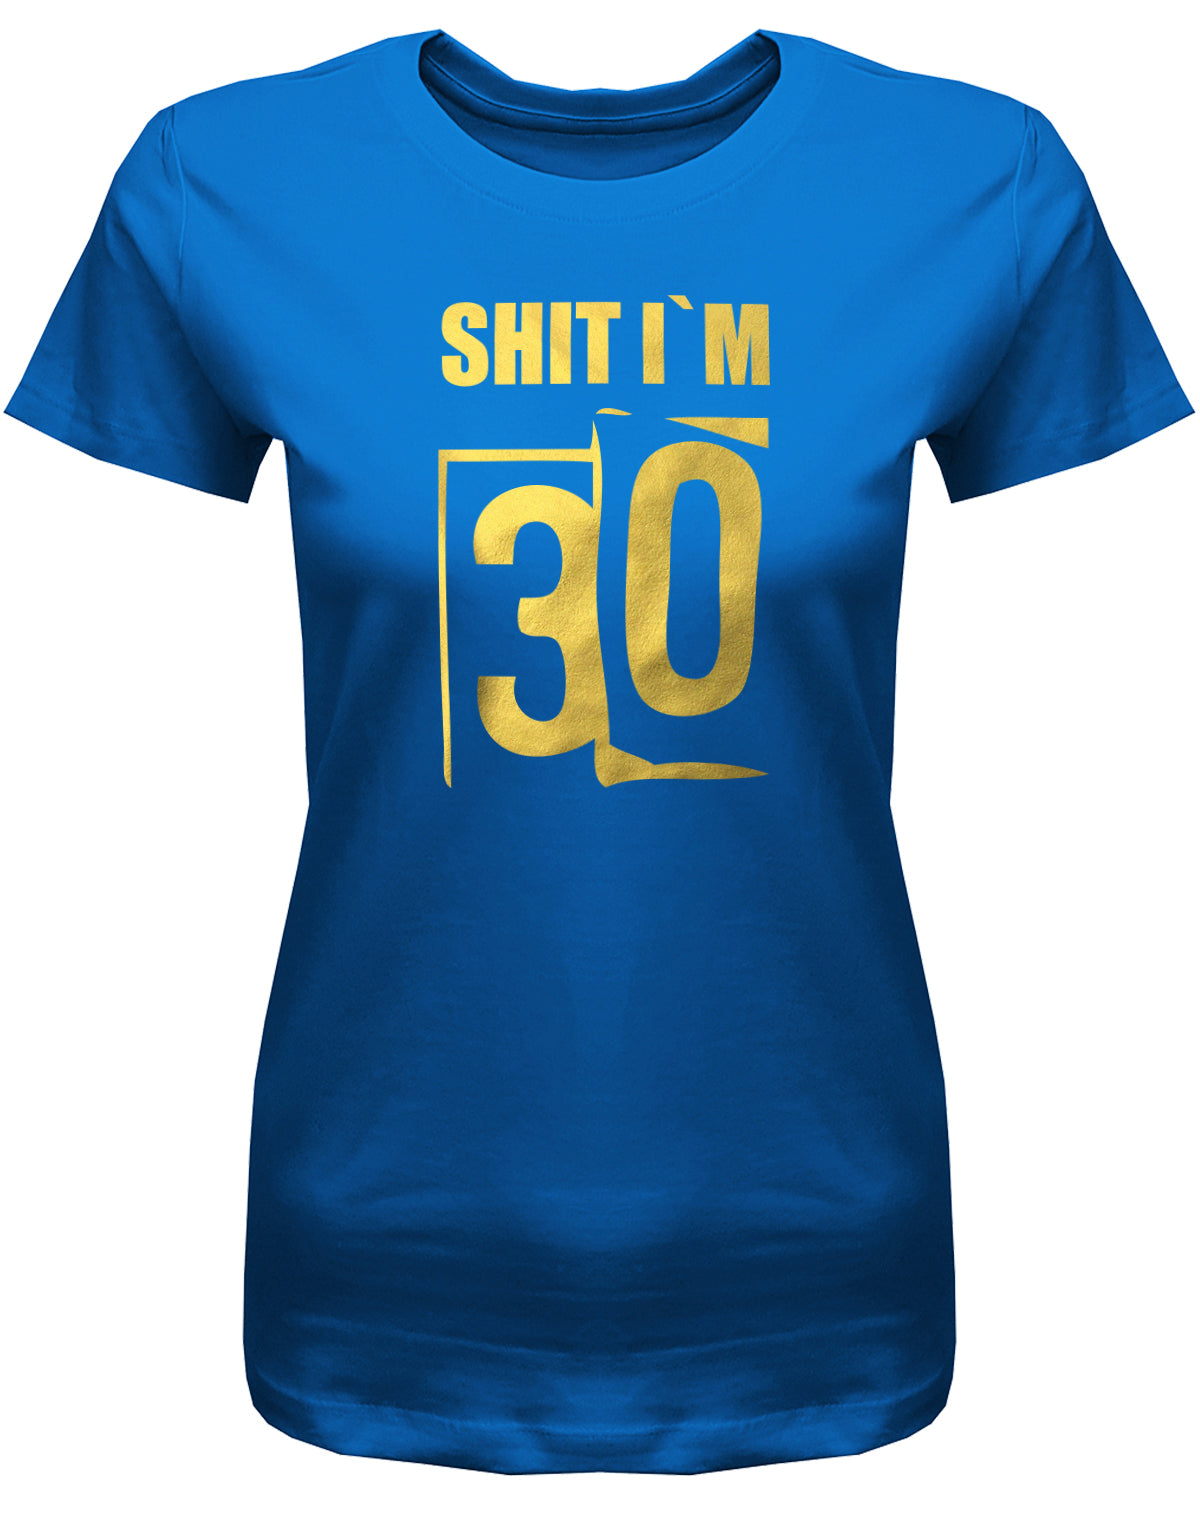 Lustiges T-Shirt zum 30. Geburtstag für die Frau Bedruckt mit: Shit i´m 30. Scheisse ich bin 30. Geschenk zum 30 geburtstag Frau ✓ 1993 geburtstag Frau ✓ 30 Geburtstag tshirt ✓ shirt geburtstag 30 Royalblau